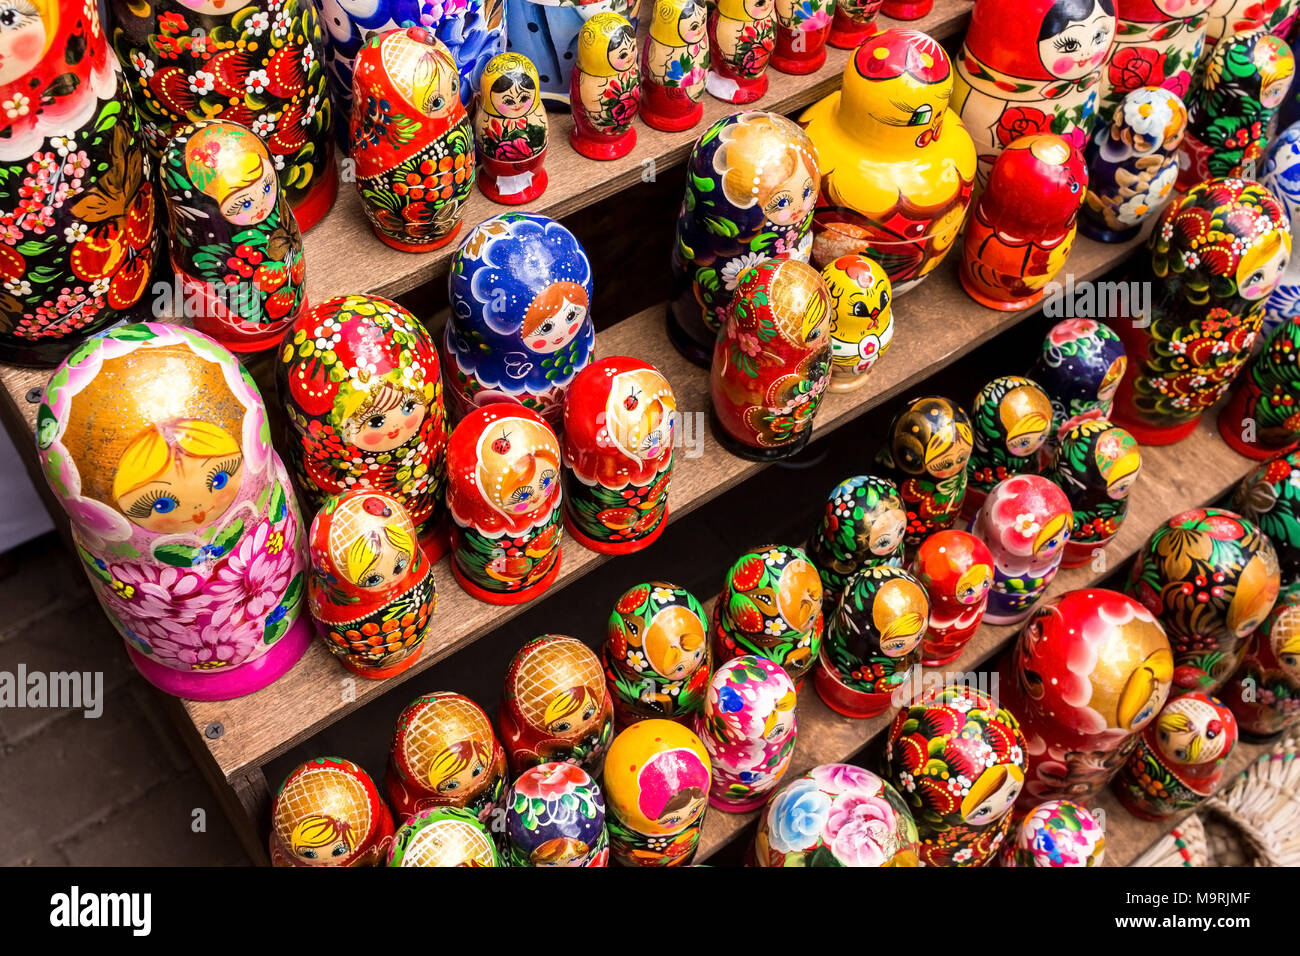 Traditionelle russische Puppen, Figuren, Geschenke Shop Stockfotografie -  Alamy